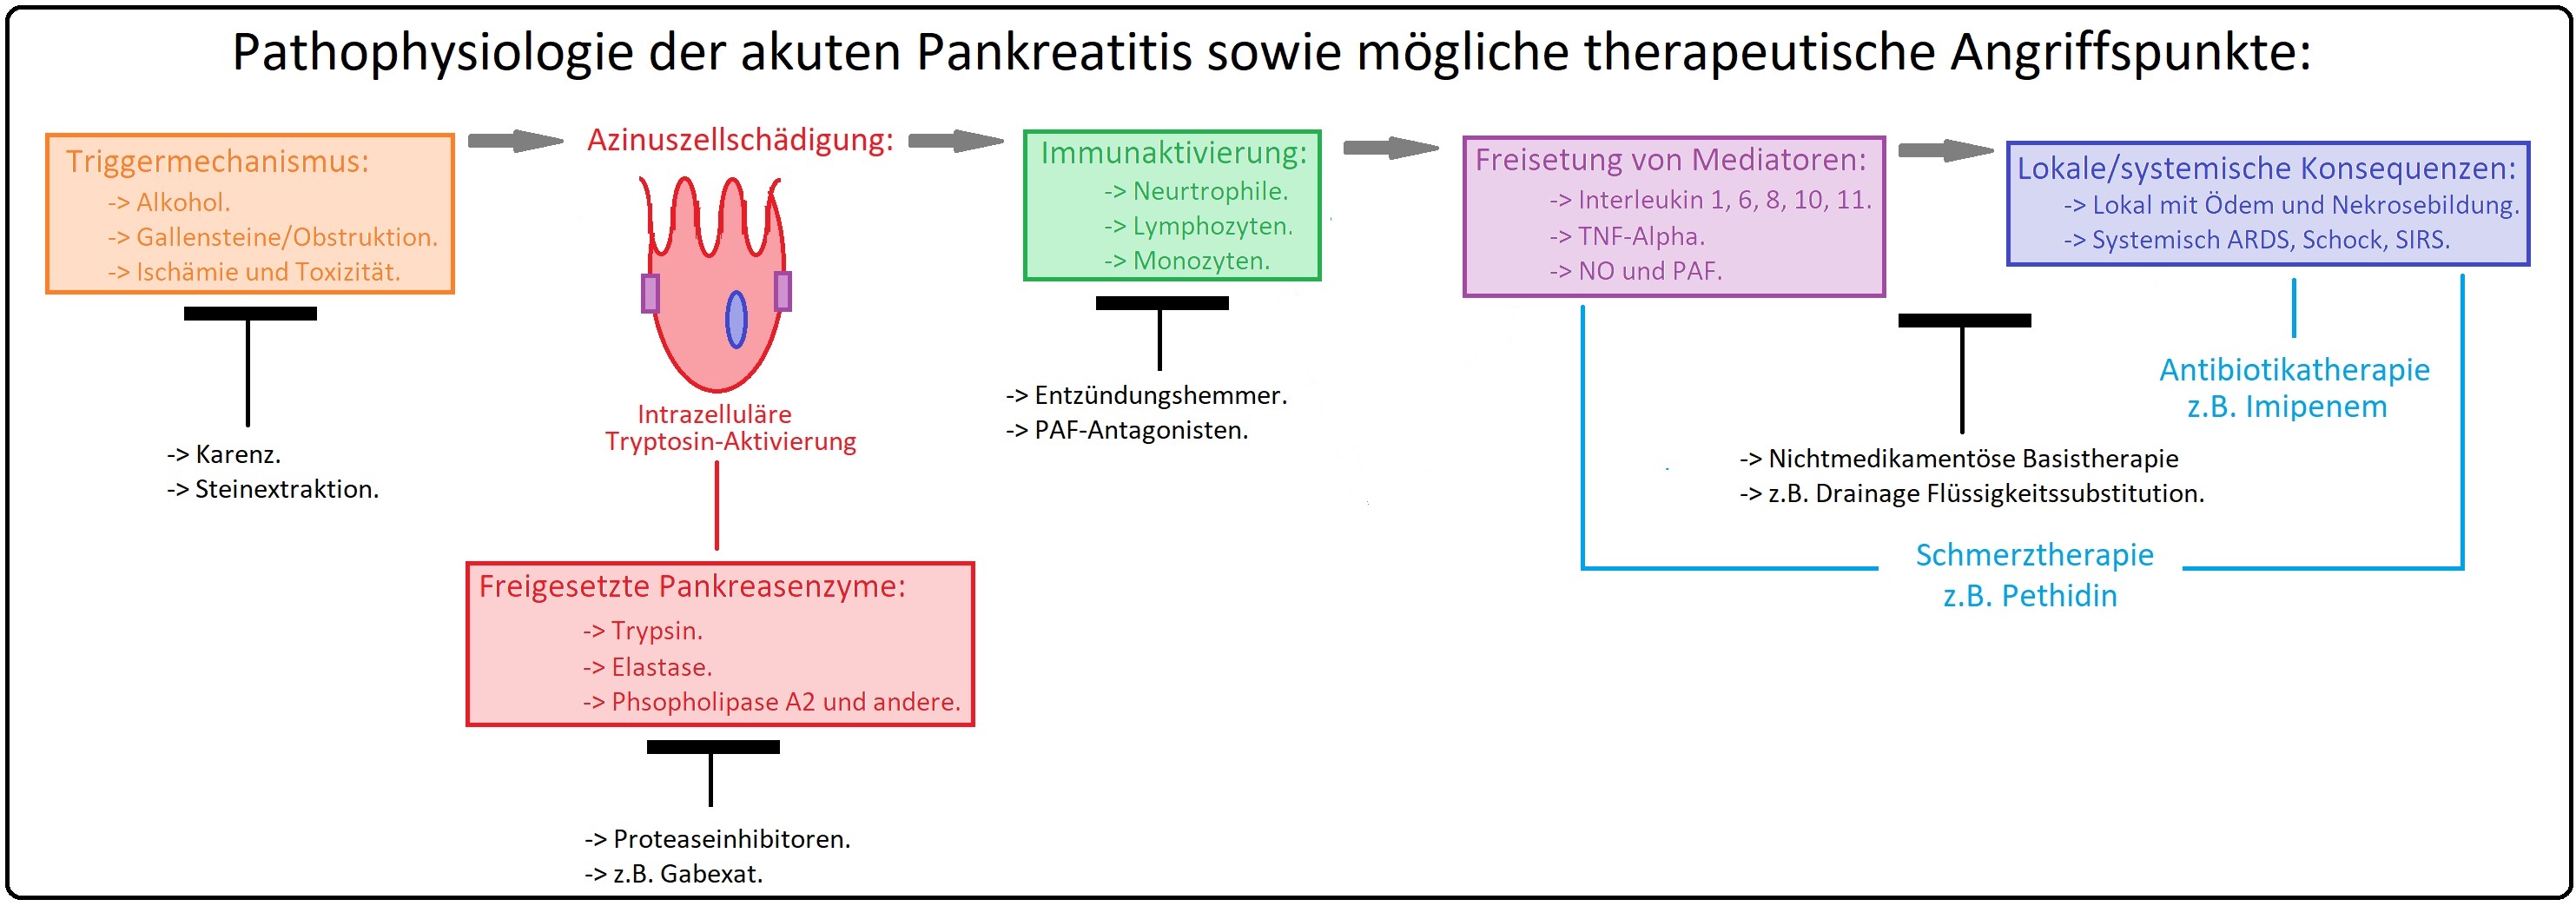 586 Pathophysiologie der akuten Pankreatitis sowie mögliche therapeutische Angriffspunkte